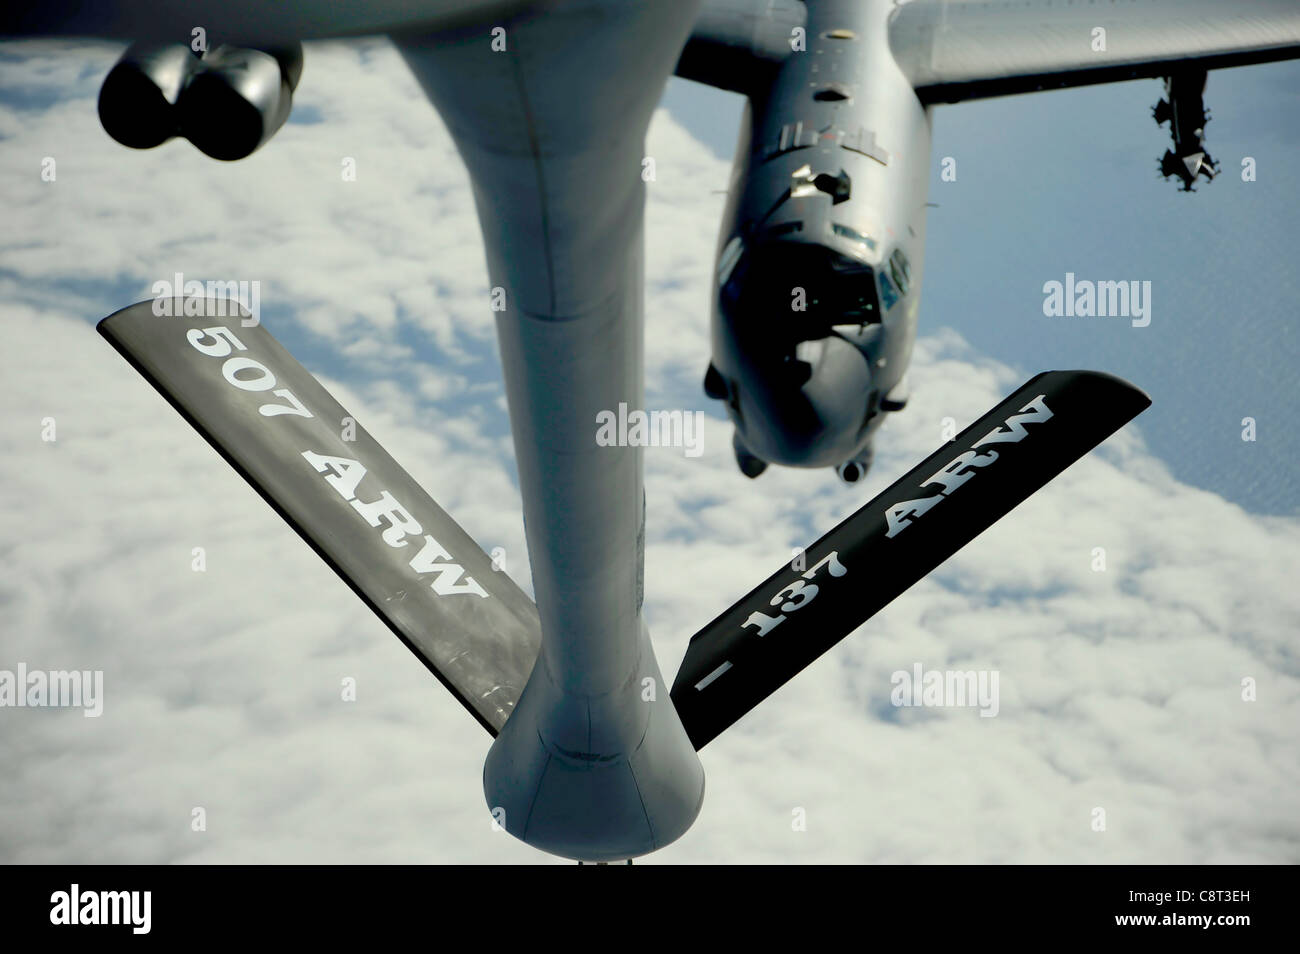 Eine B-52 Stratofortress bereitet sich auf eine Treibstofflieferung von einem KC-135 Stratotanker zur Unterstützung der Übung Rim der pazifischen Übung, oder RIMPAC 10. Juli 2010, über dem Pazifischen Ozean vor. RIMPAC ist eine zweijährliche, multinationale Übung, die darauf ausgerichtet ist, regionale Partnerschaften zu stärken und die Interoperabilität zu verbessern. Die B-52 stammt aus dem 20. Bombengeschwader auf der Barksdale Air Force Base, La., und die KC-135 ist dem 465. Luftbetankungsgeschwader auf der Tinker Air Force Base, Okla, zugeordnet. Stockfoto